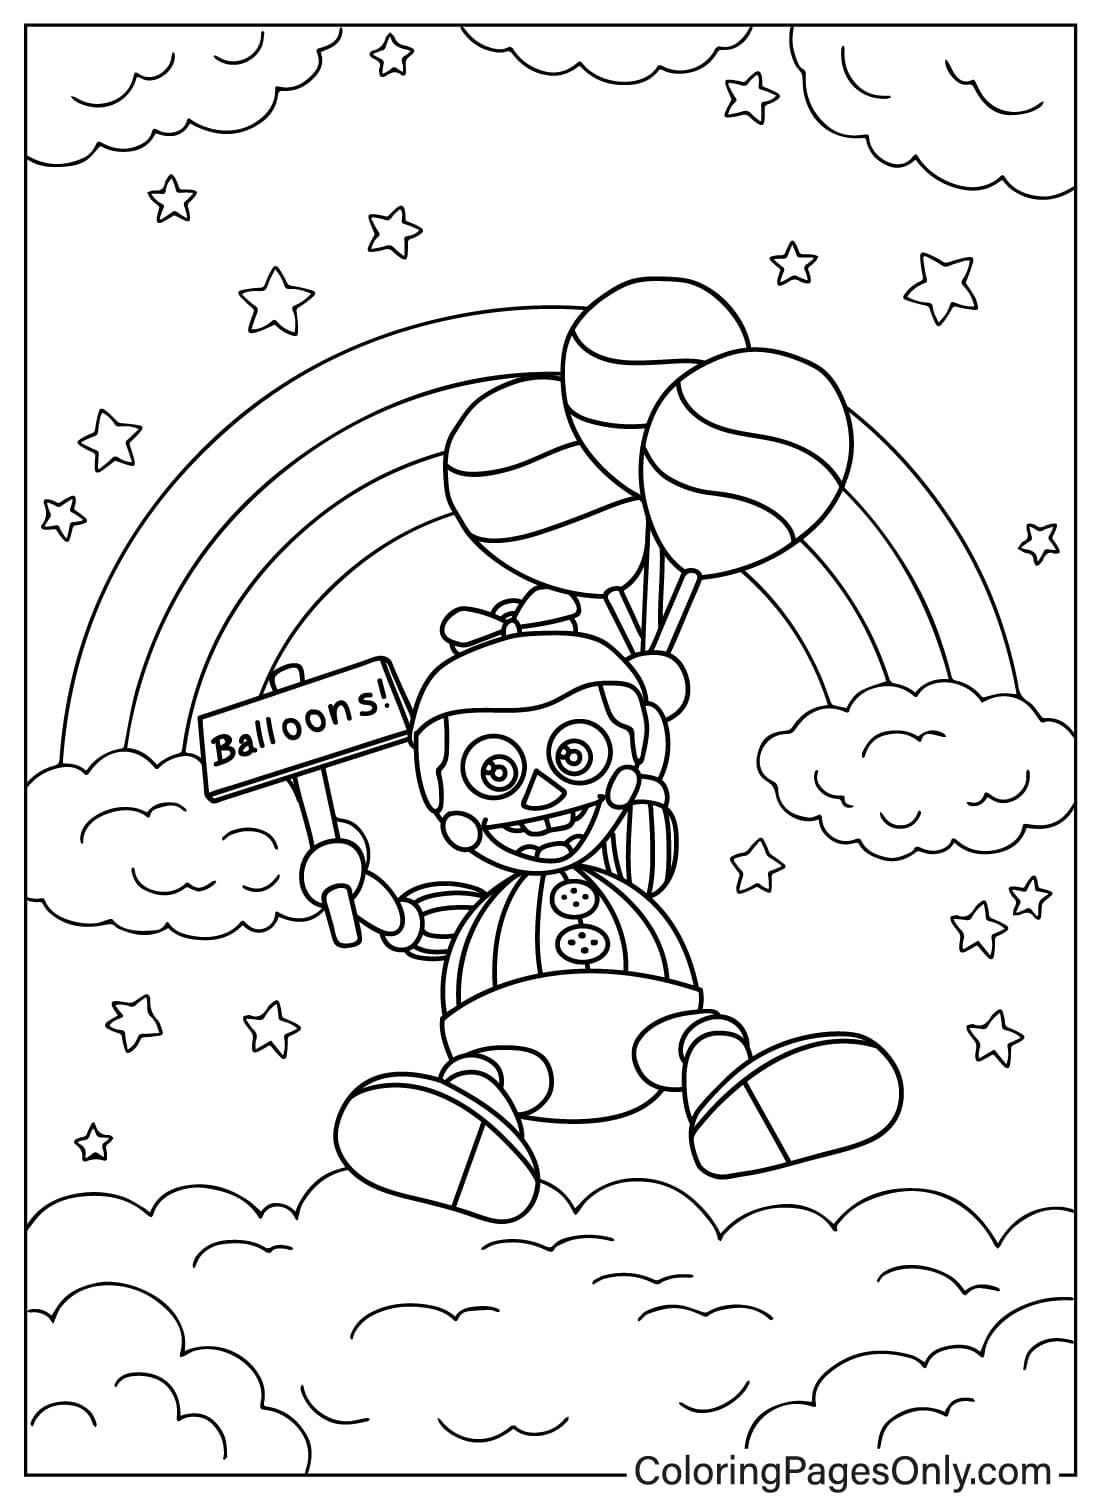 Página para colorear de Balloon Boy para imprimir desde Balloon Boy